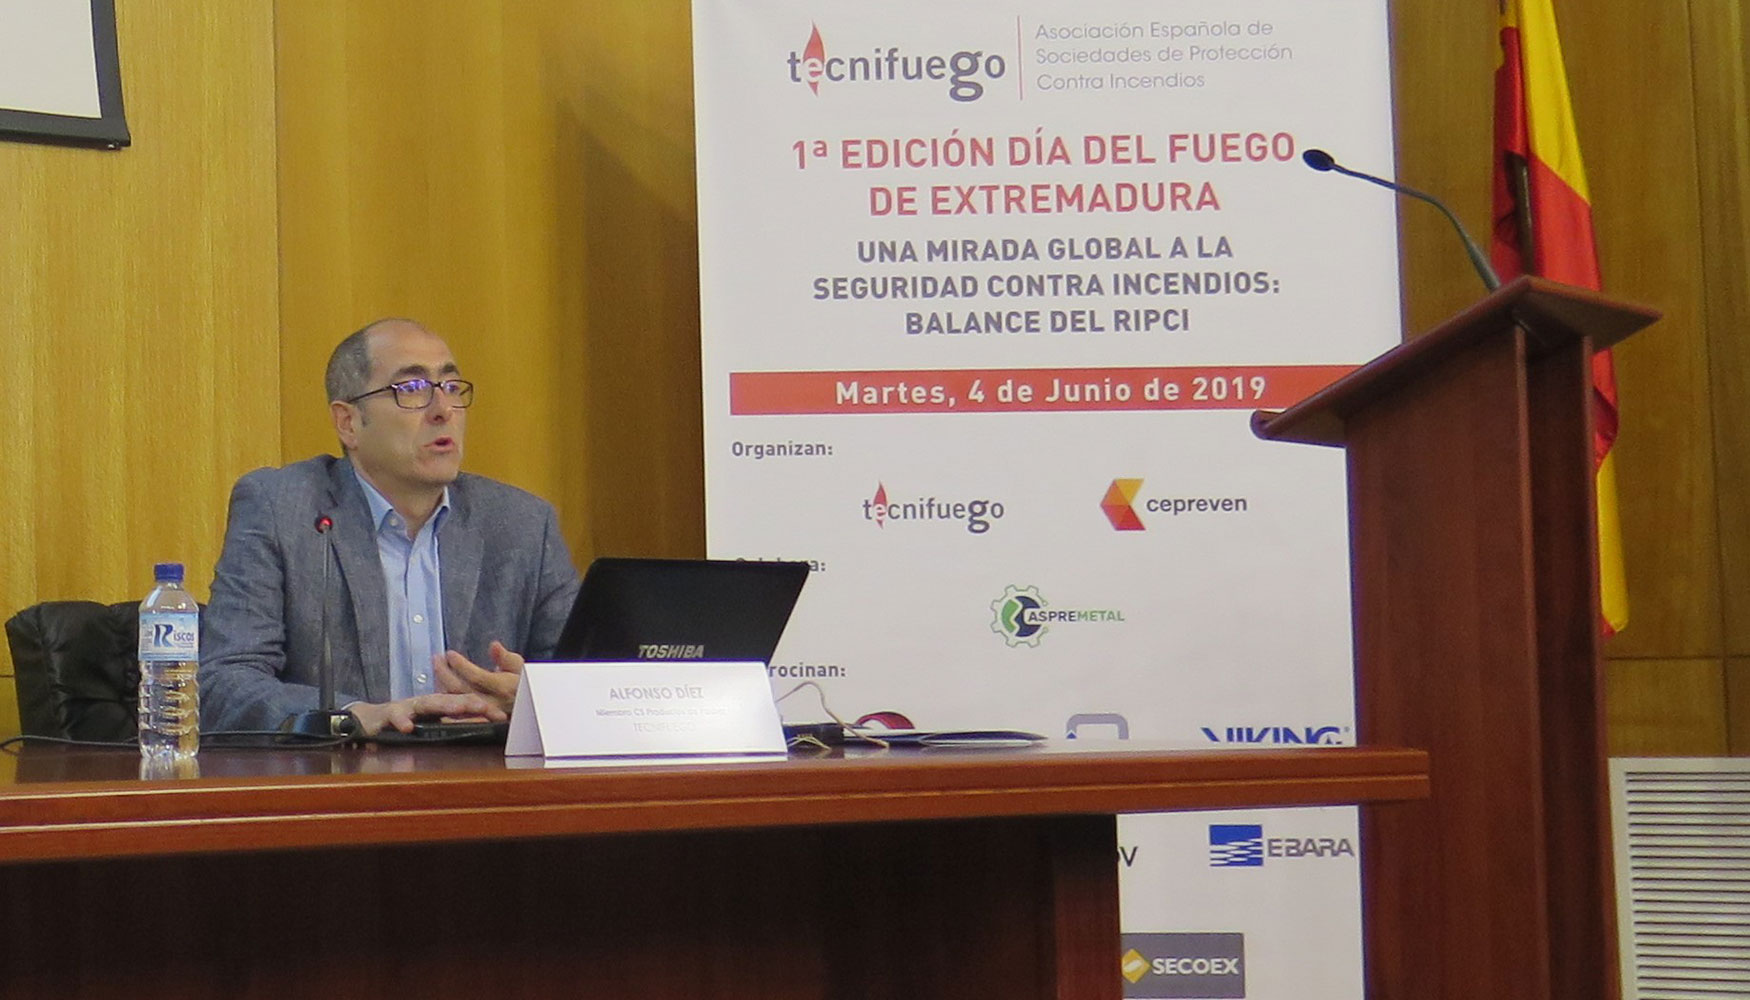 Alfonso Dez, nuevo coordinador del Comit de Fabricantes de Productos de Pasiva de Tecnifuego